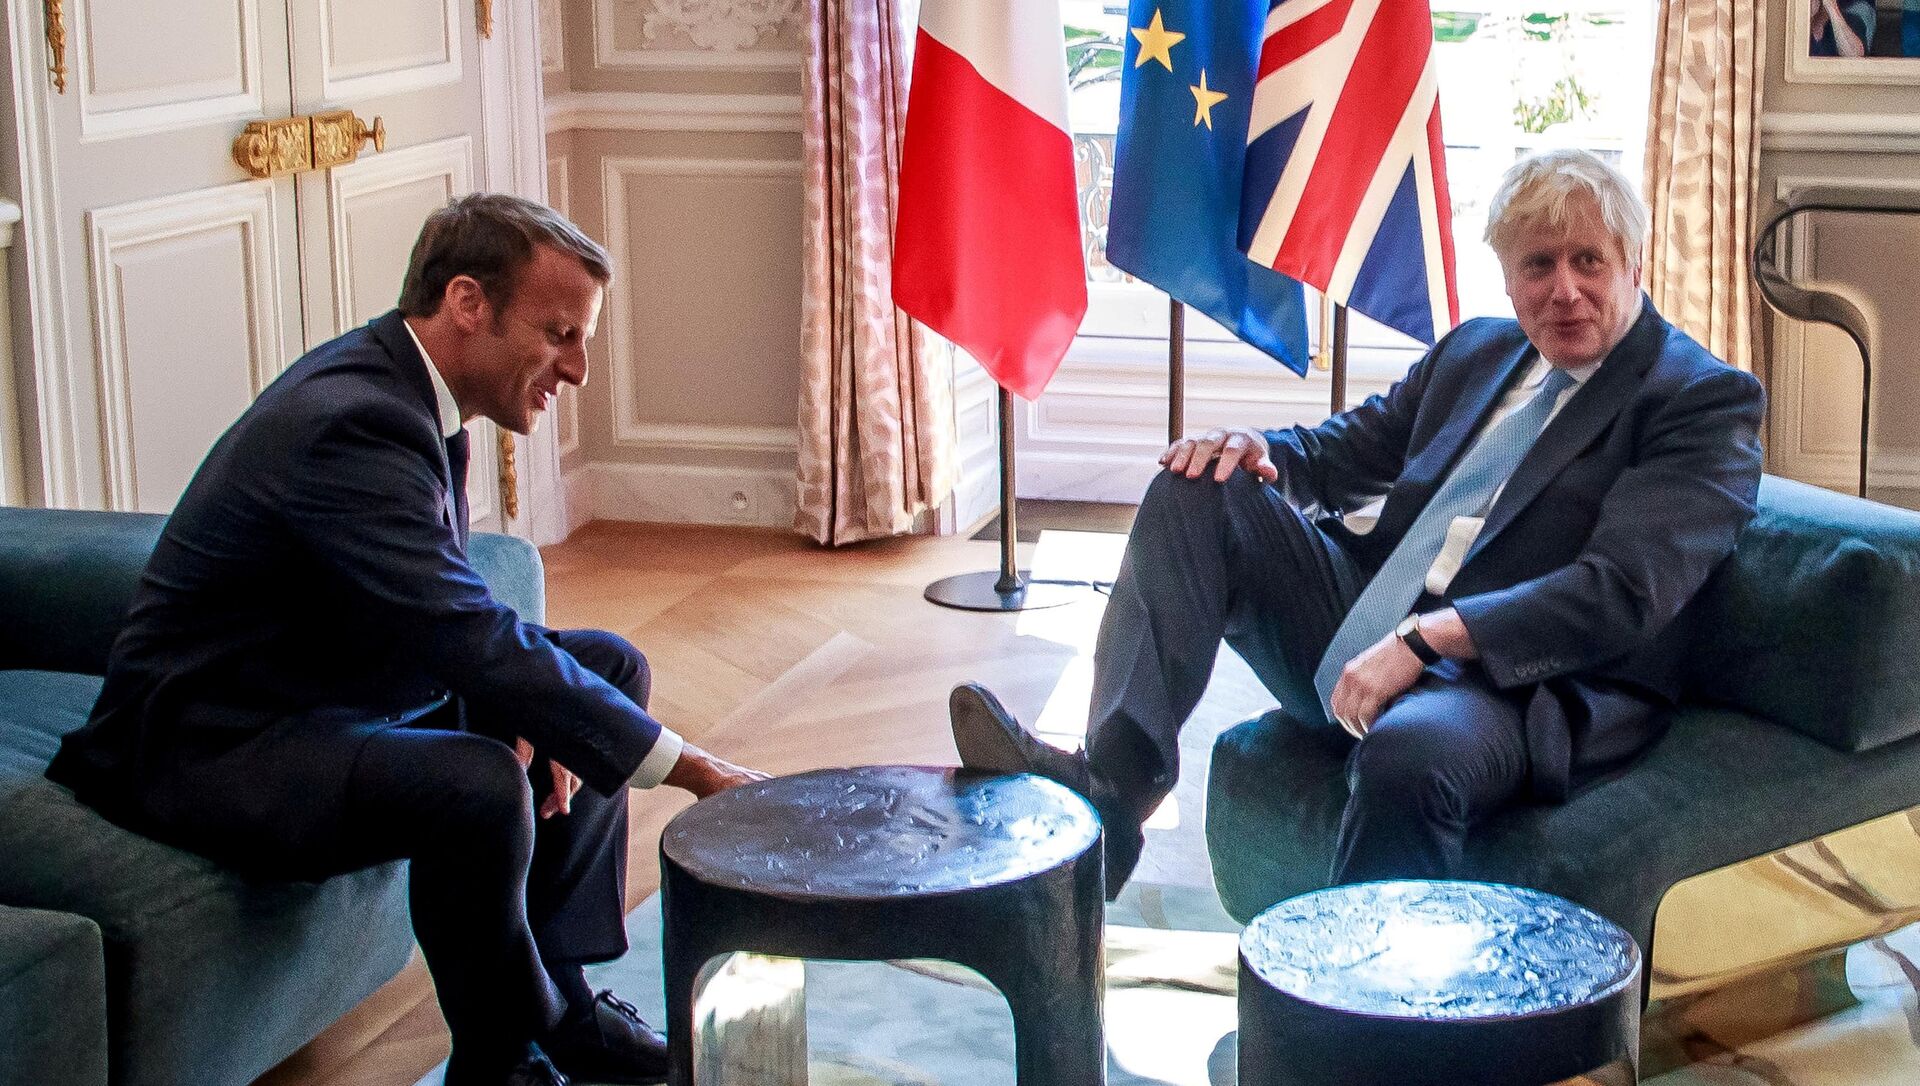 رئيس وزراء بريطانيا بوريس جونسون يضع قدمه على طاولة أمام الرئيس الفرنسي إيمانويل ماكرون بداخل قصر الإليزيه بالعاصمة الفرنسية باريس، 22 أغسطس/آب 2019 - سبوتنيك عربي, 1920, 29.10.2021